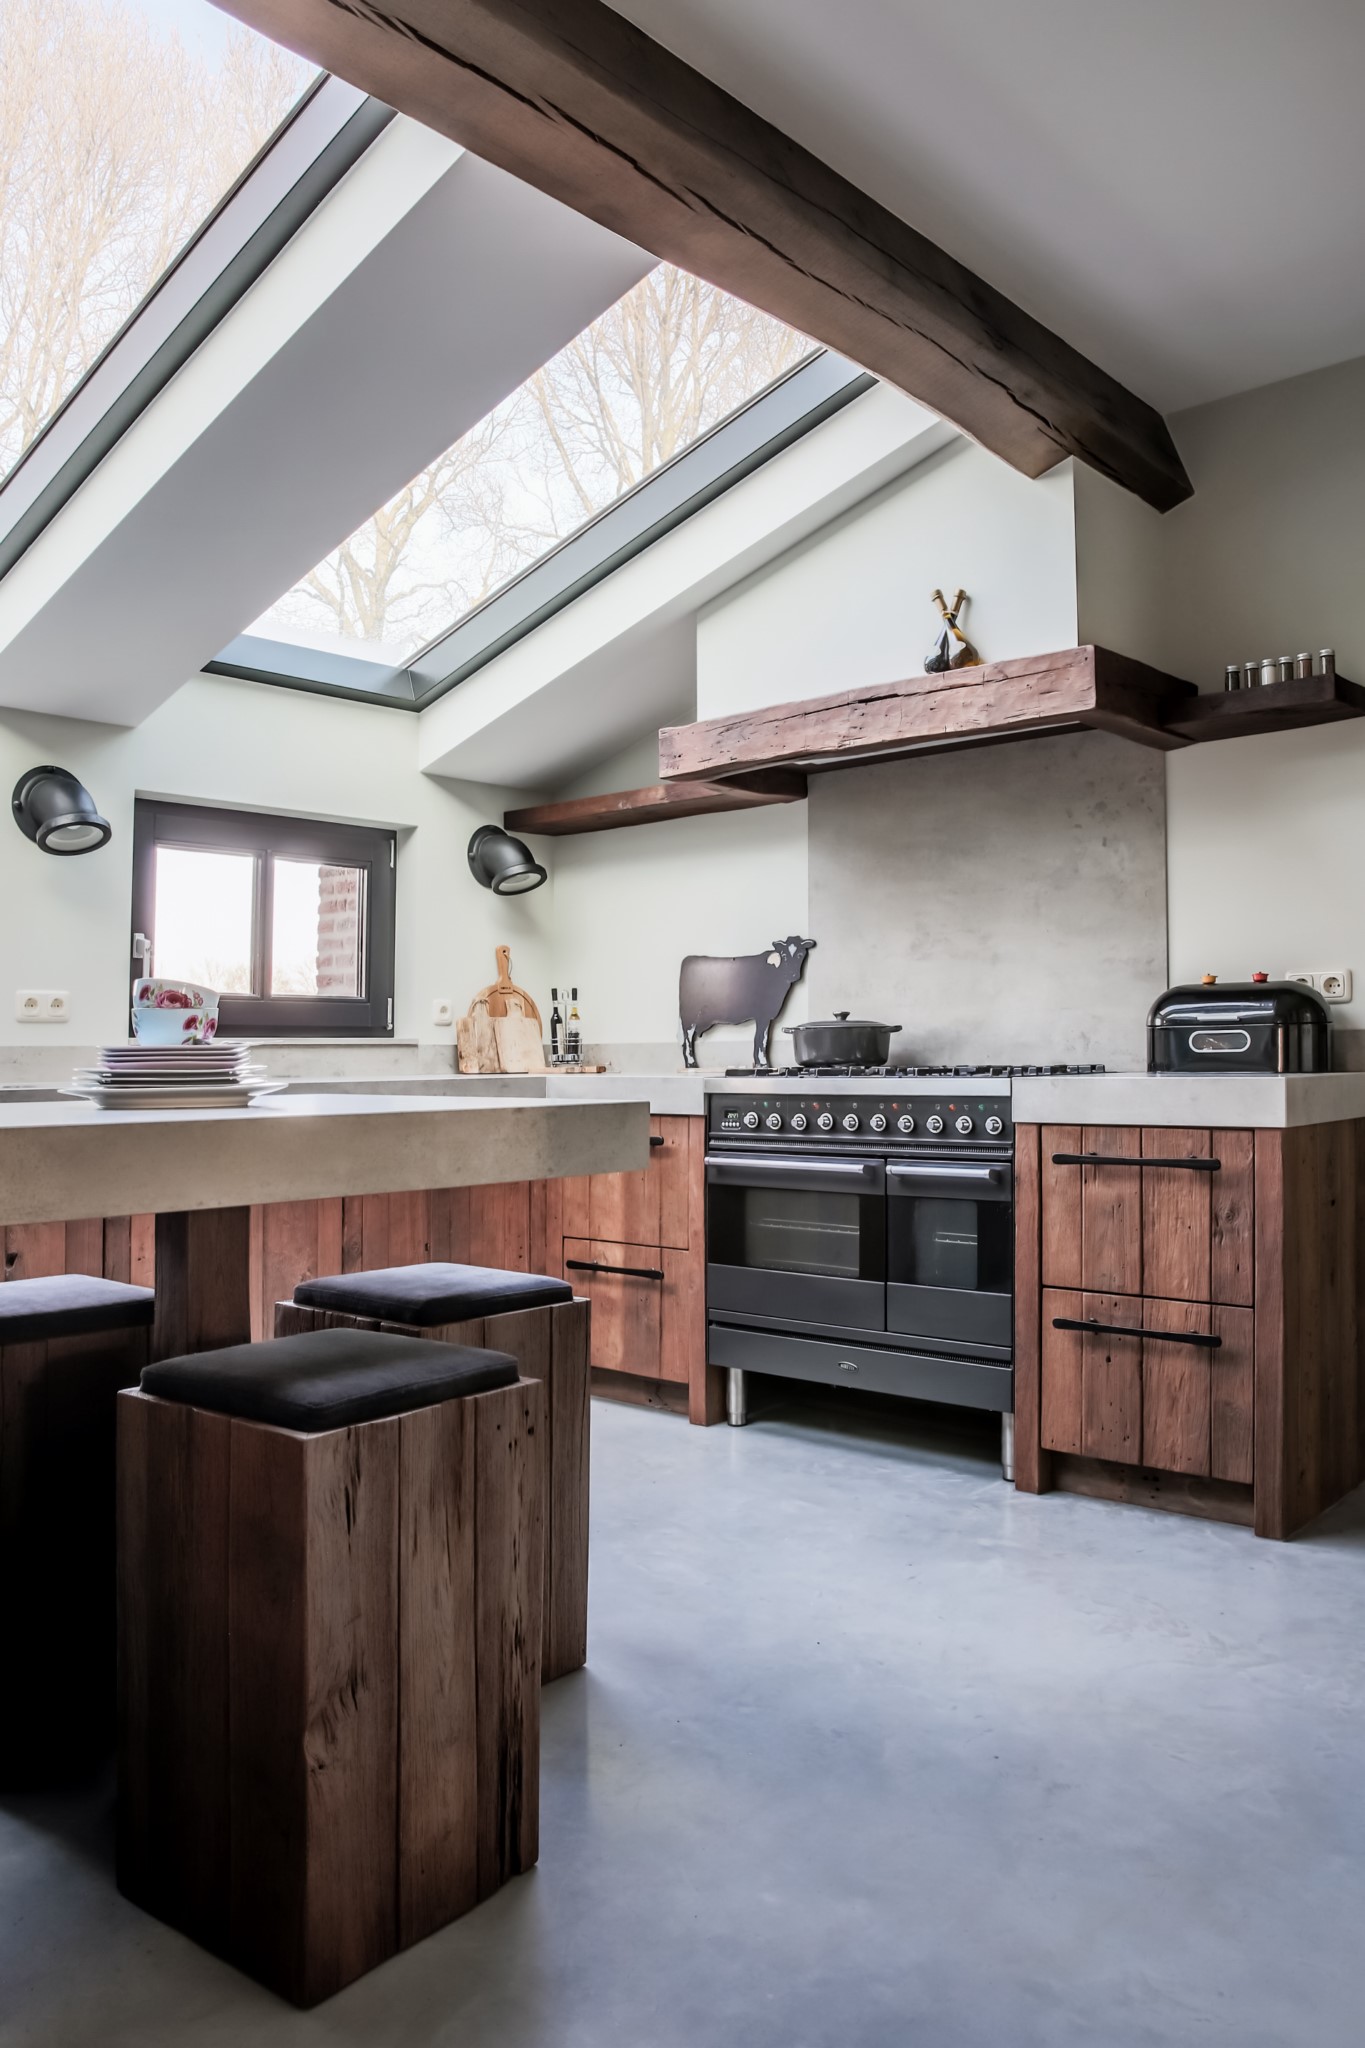 Foto: Mereno Worchester oud hout keuken kookgedeelte recht  Kopieren 